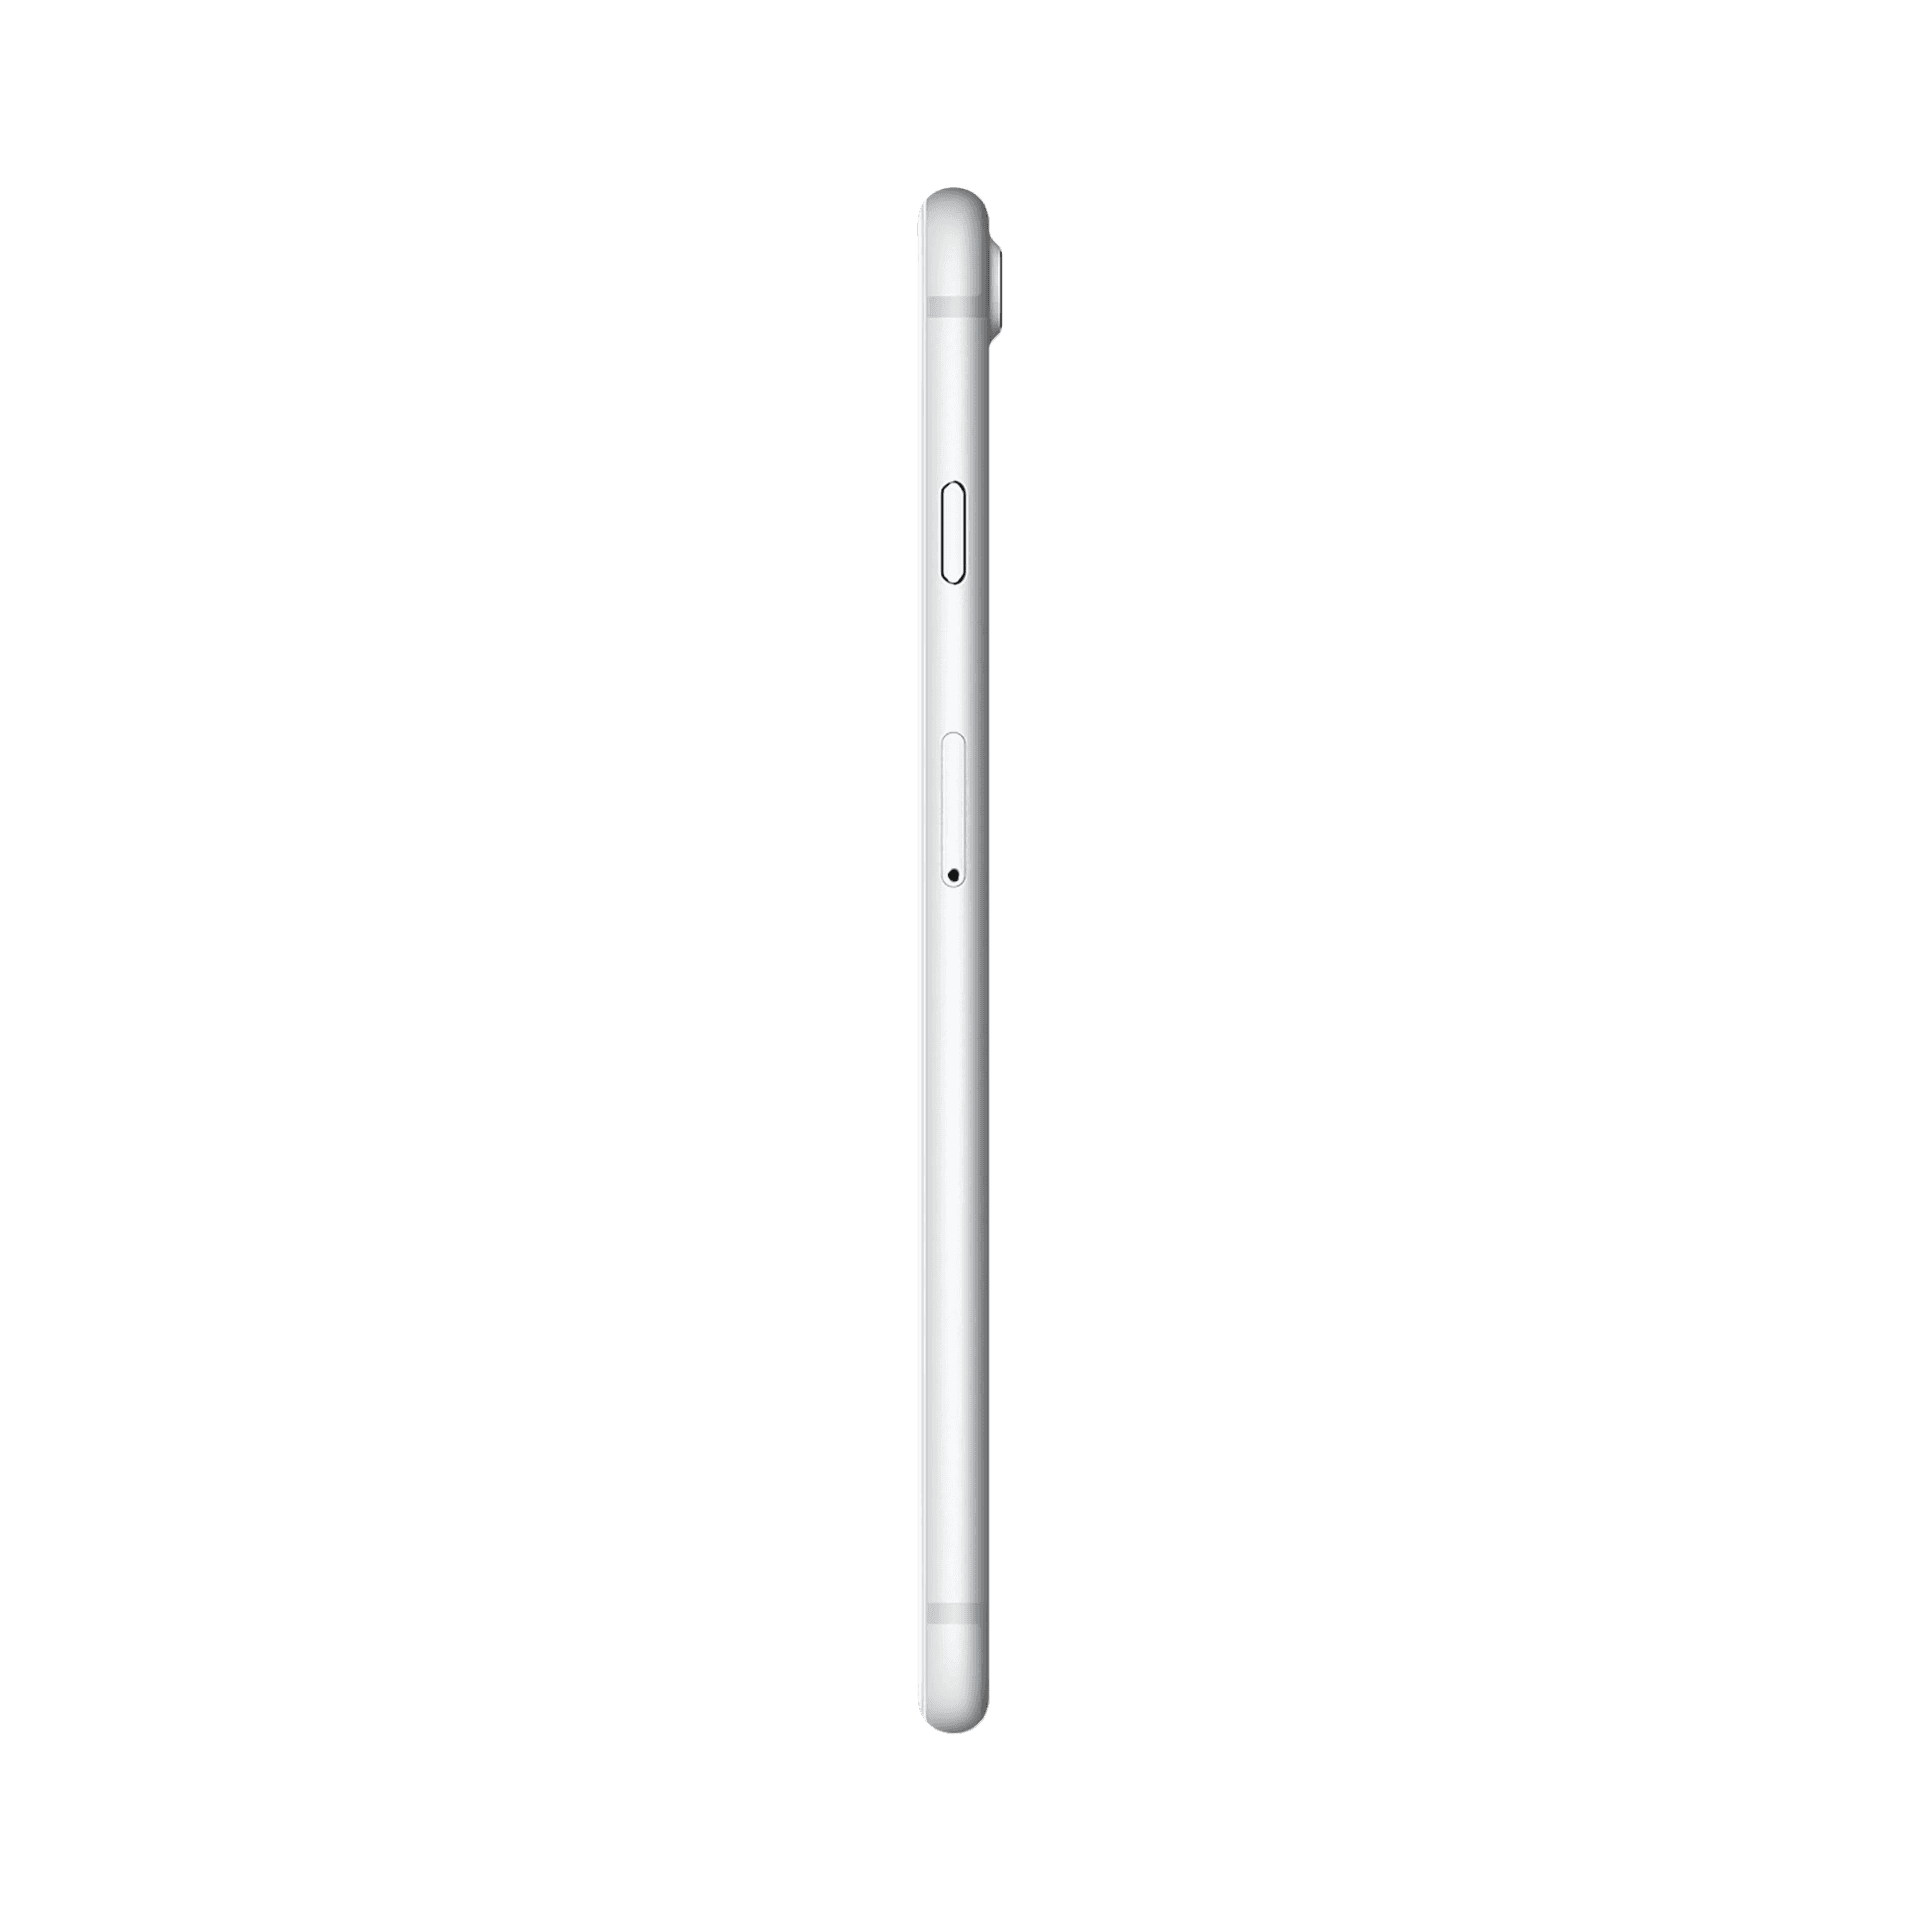 Apple iPhone 7 Plus - 256 GB - Gümüş